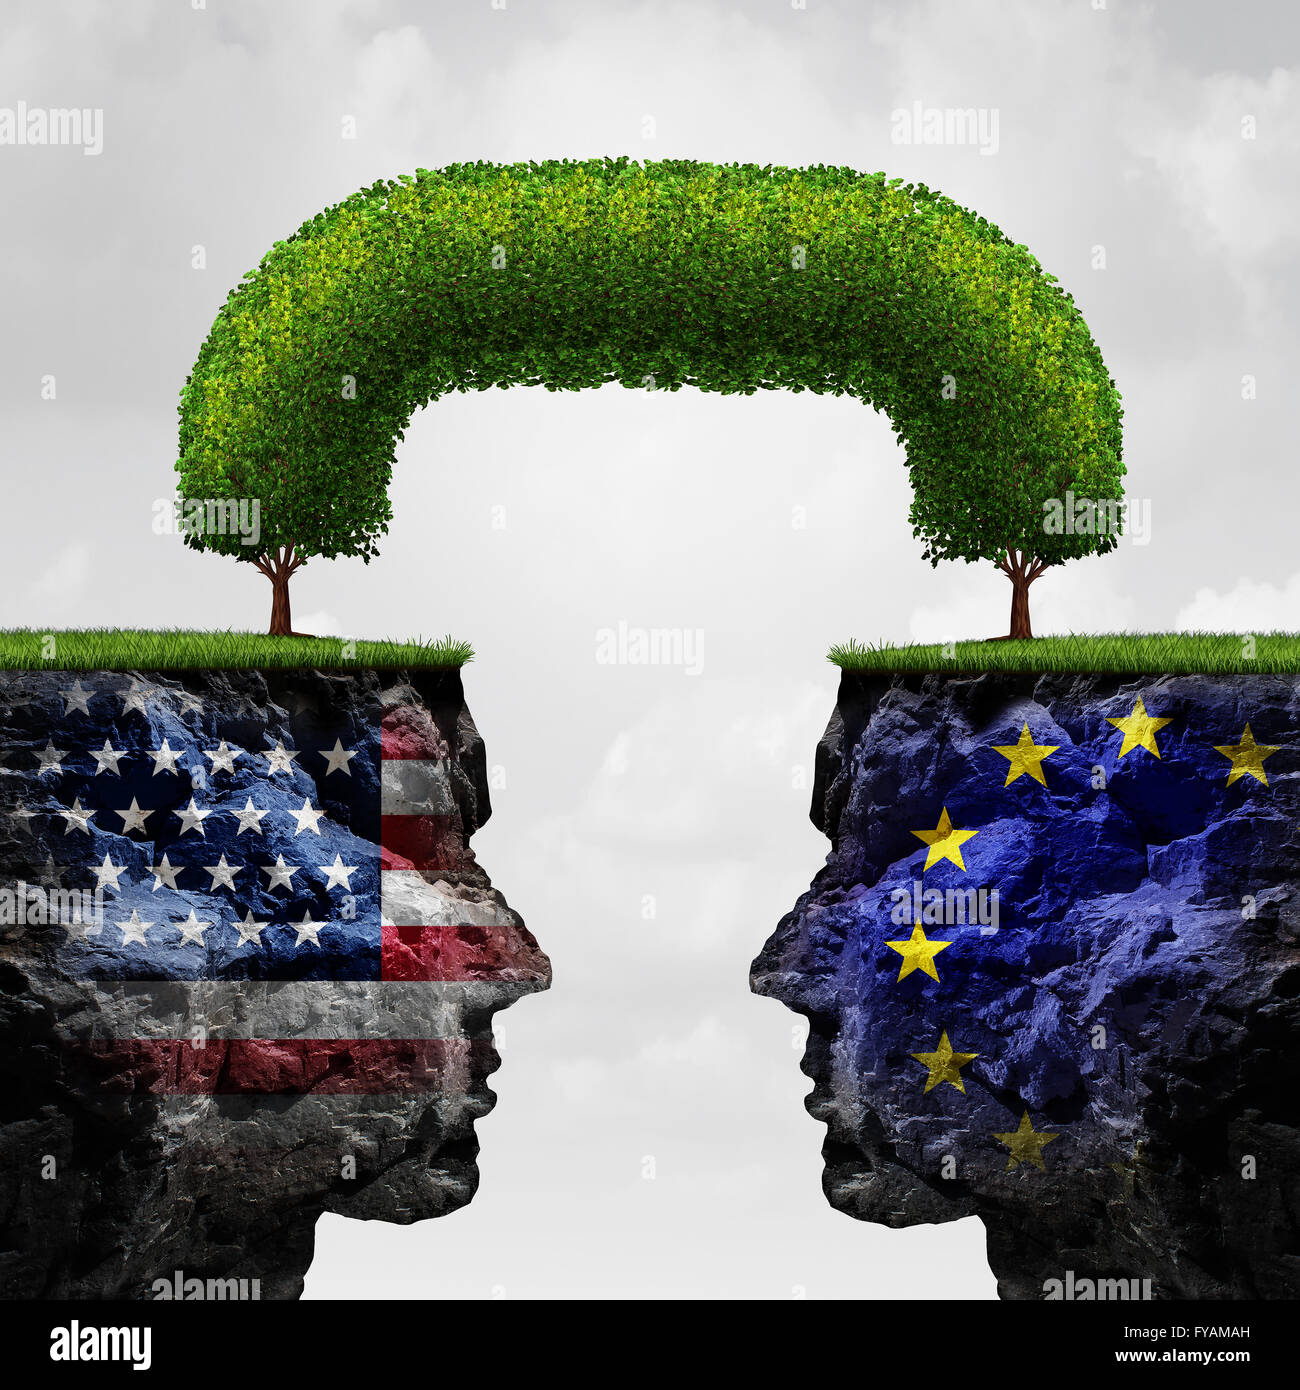 American partnership europea e il commercio internazionale accordo concetto finanziario come two seperate scogliere di montagna uniti tra loro da un albero connesso come una cooperazione globale simbolo in un 3D illustrazione dello stile. Foto Stock